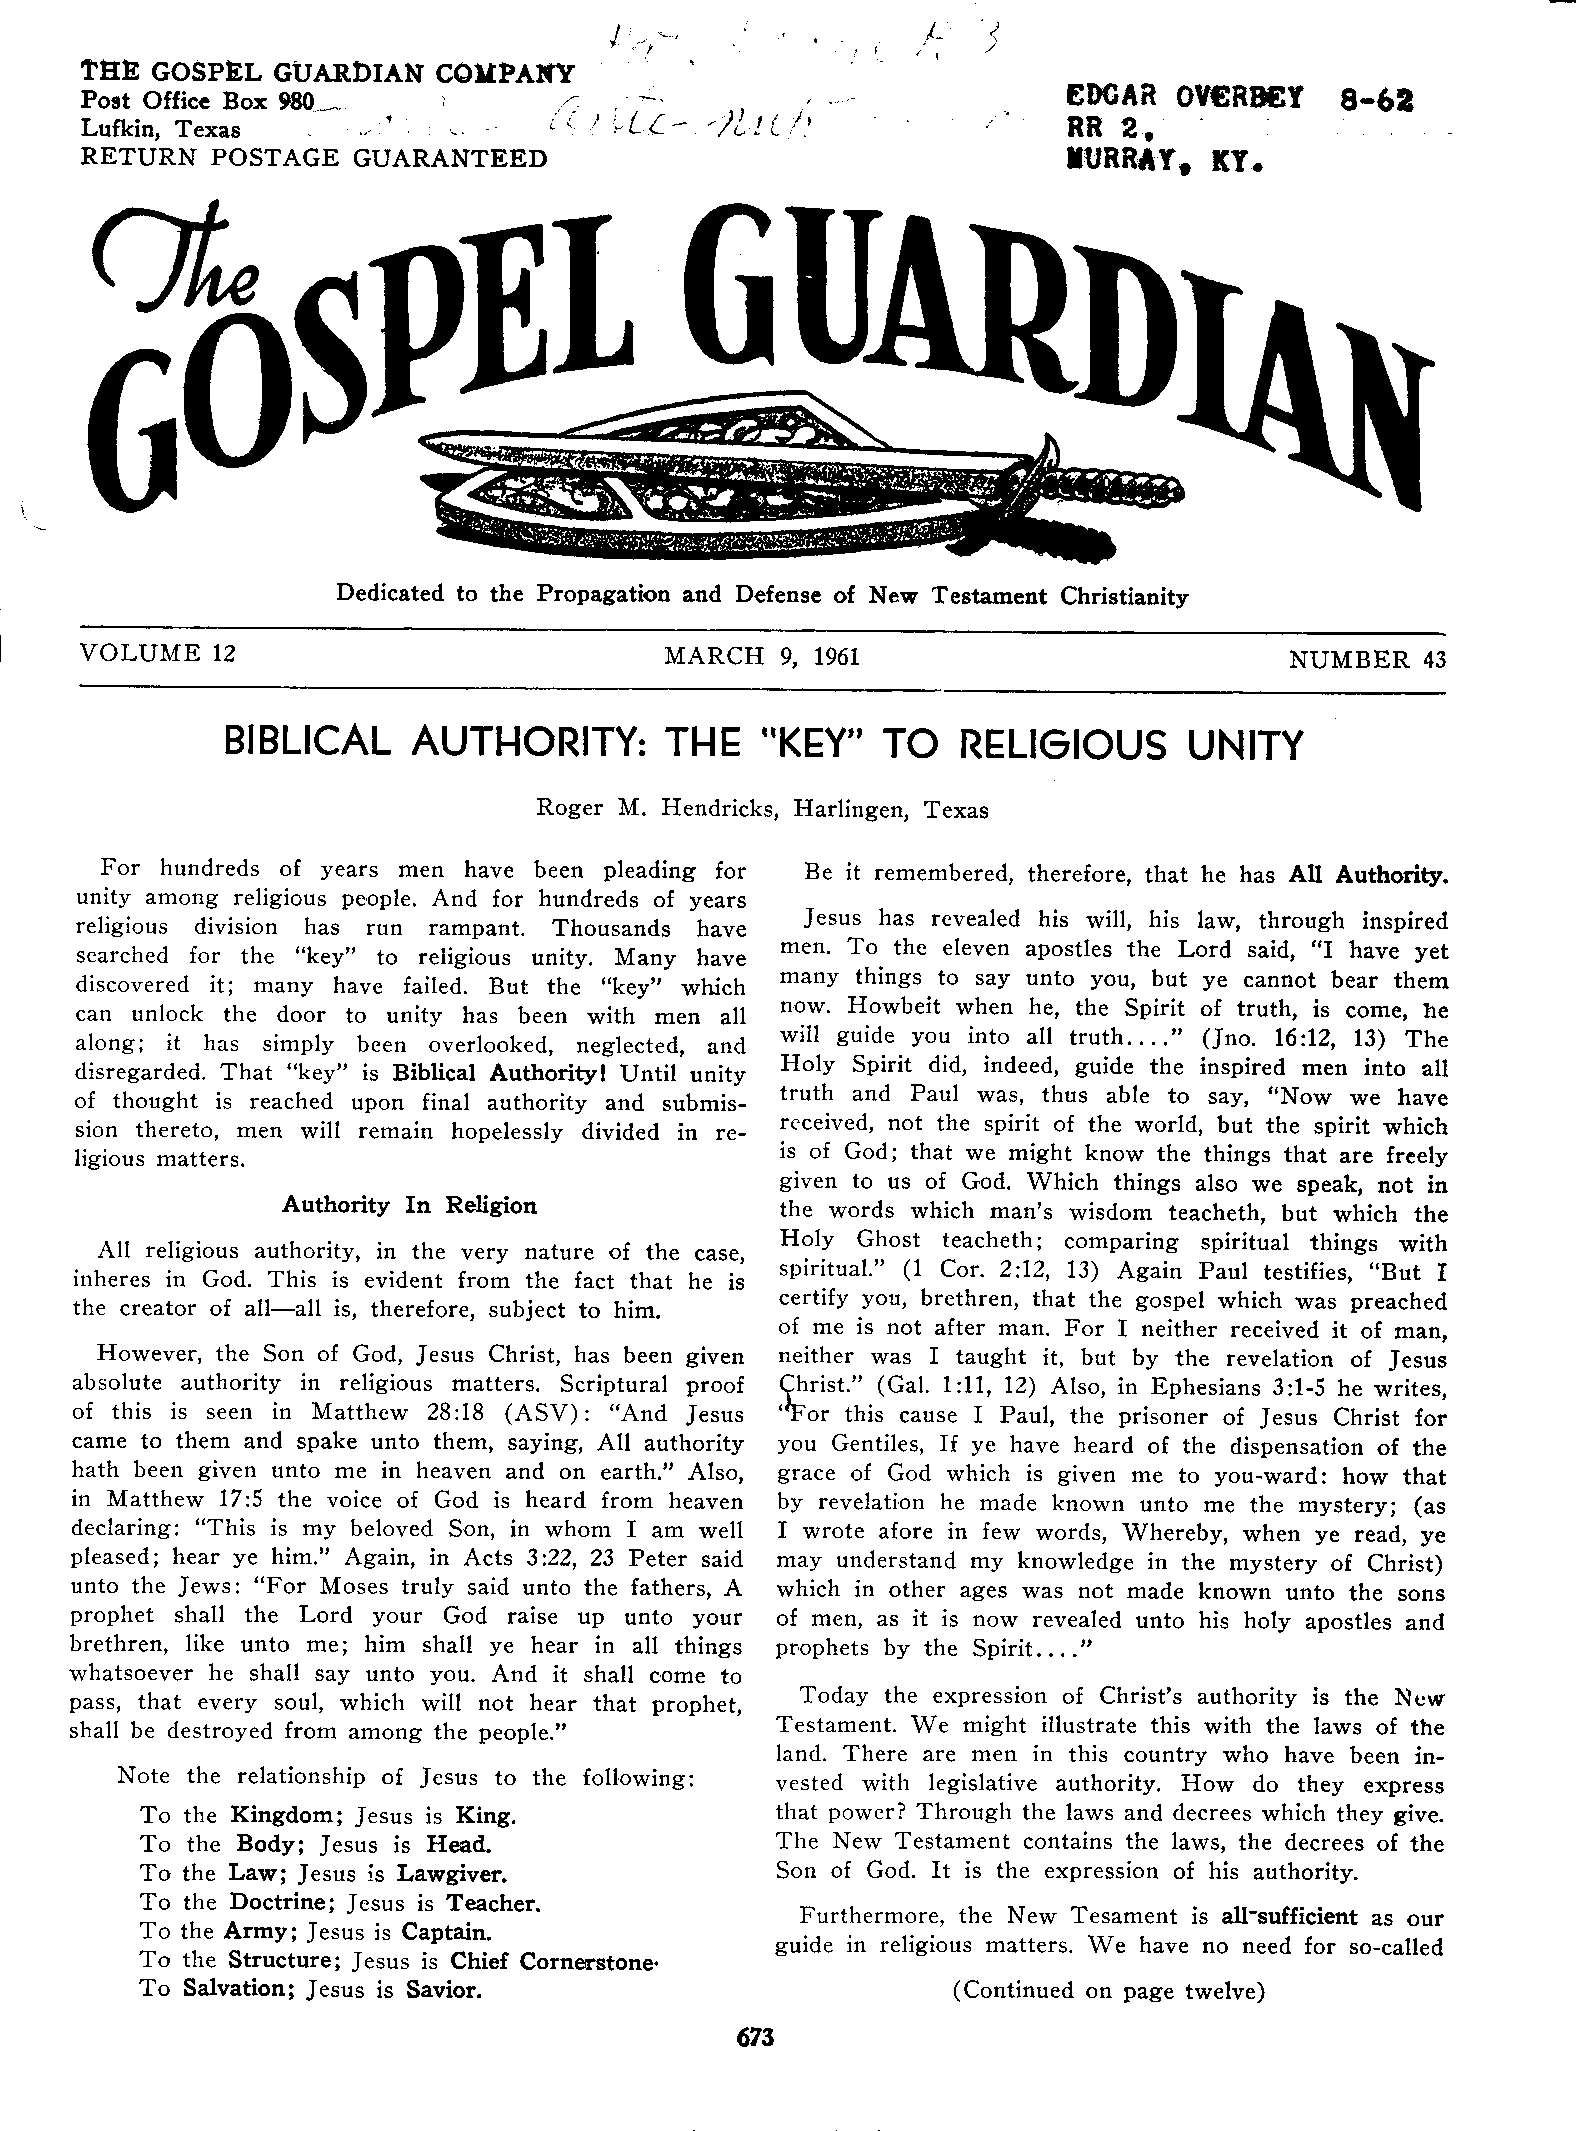 Gospel Guardian Original: Vol.12 No.43 Pg.1